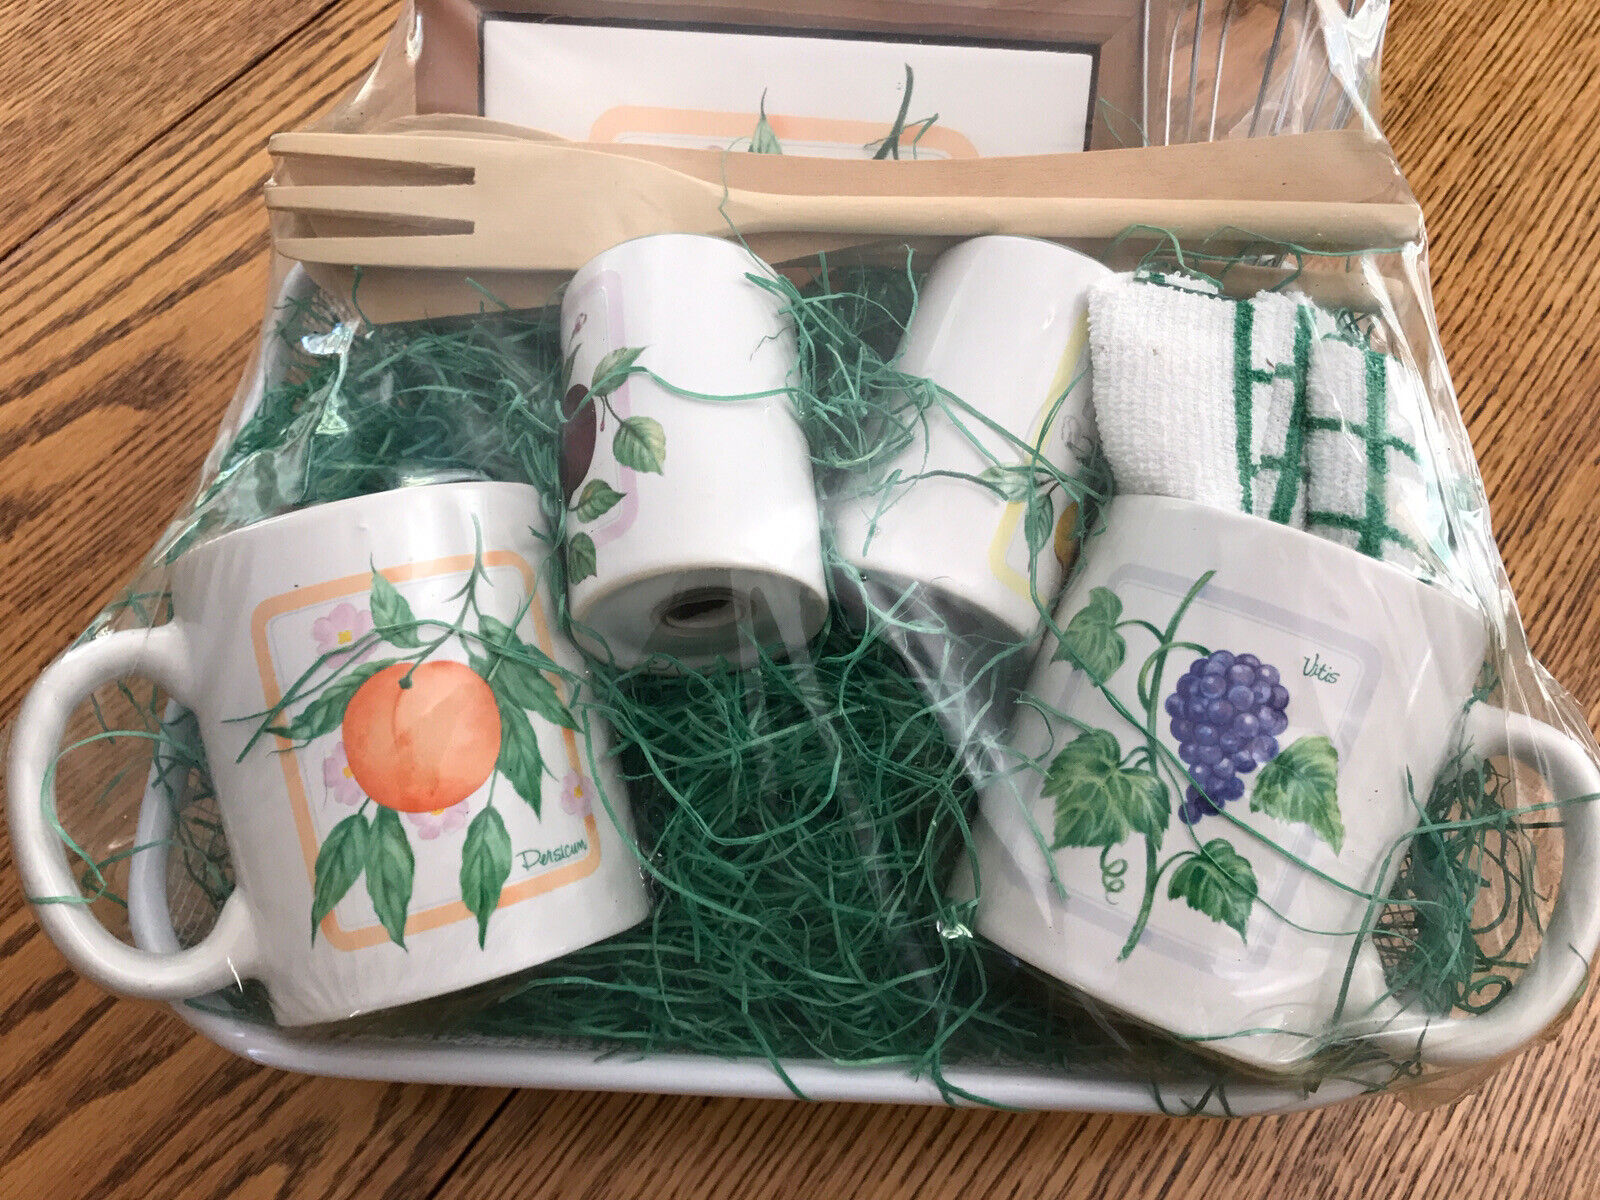 Himark Ceramic fruit design mugs, S&P,Trivet in Basket hostess gift